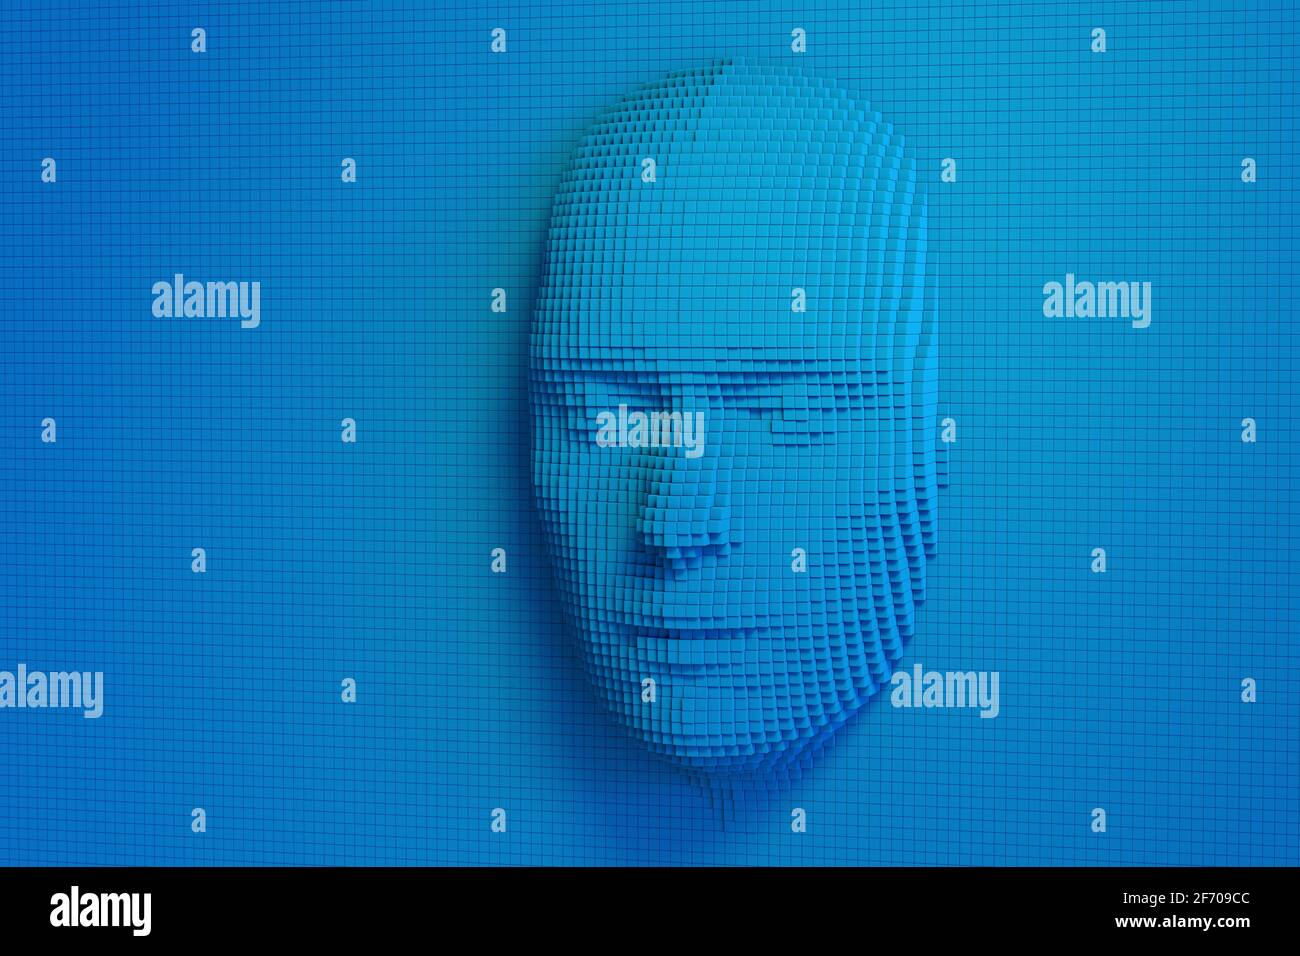 Visage humain composé de cubes bleus. Concept d'intelligence artificielle. illustration 3d. Banque D'Images